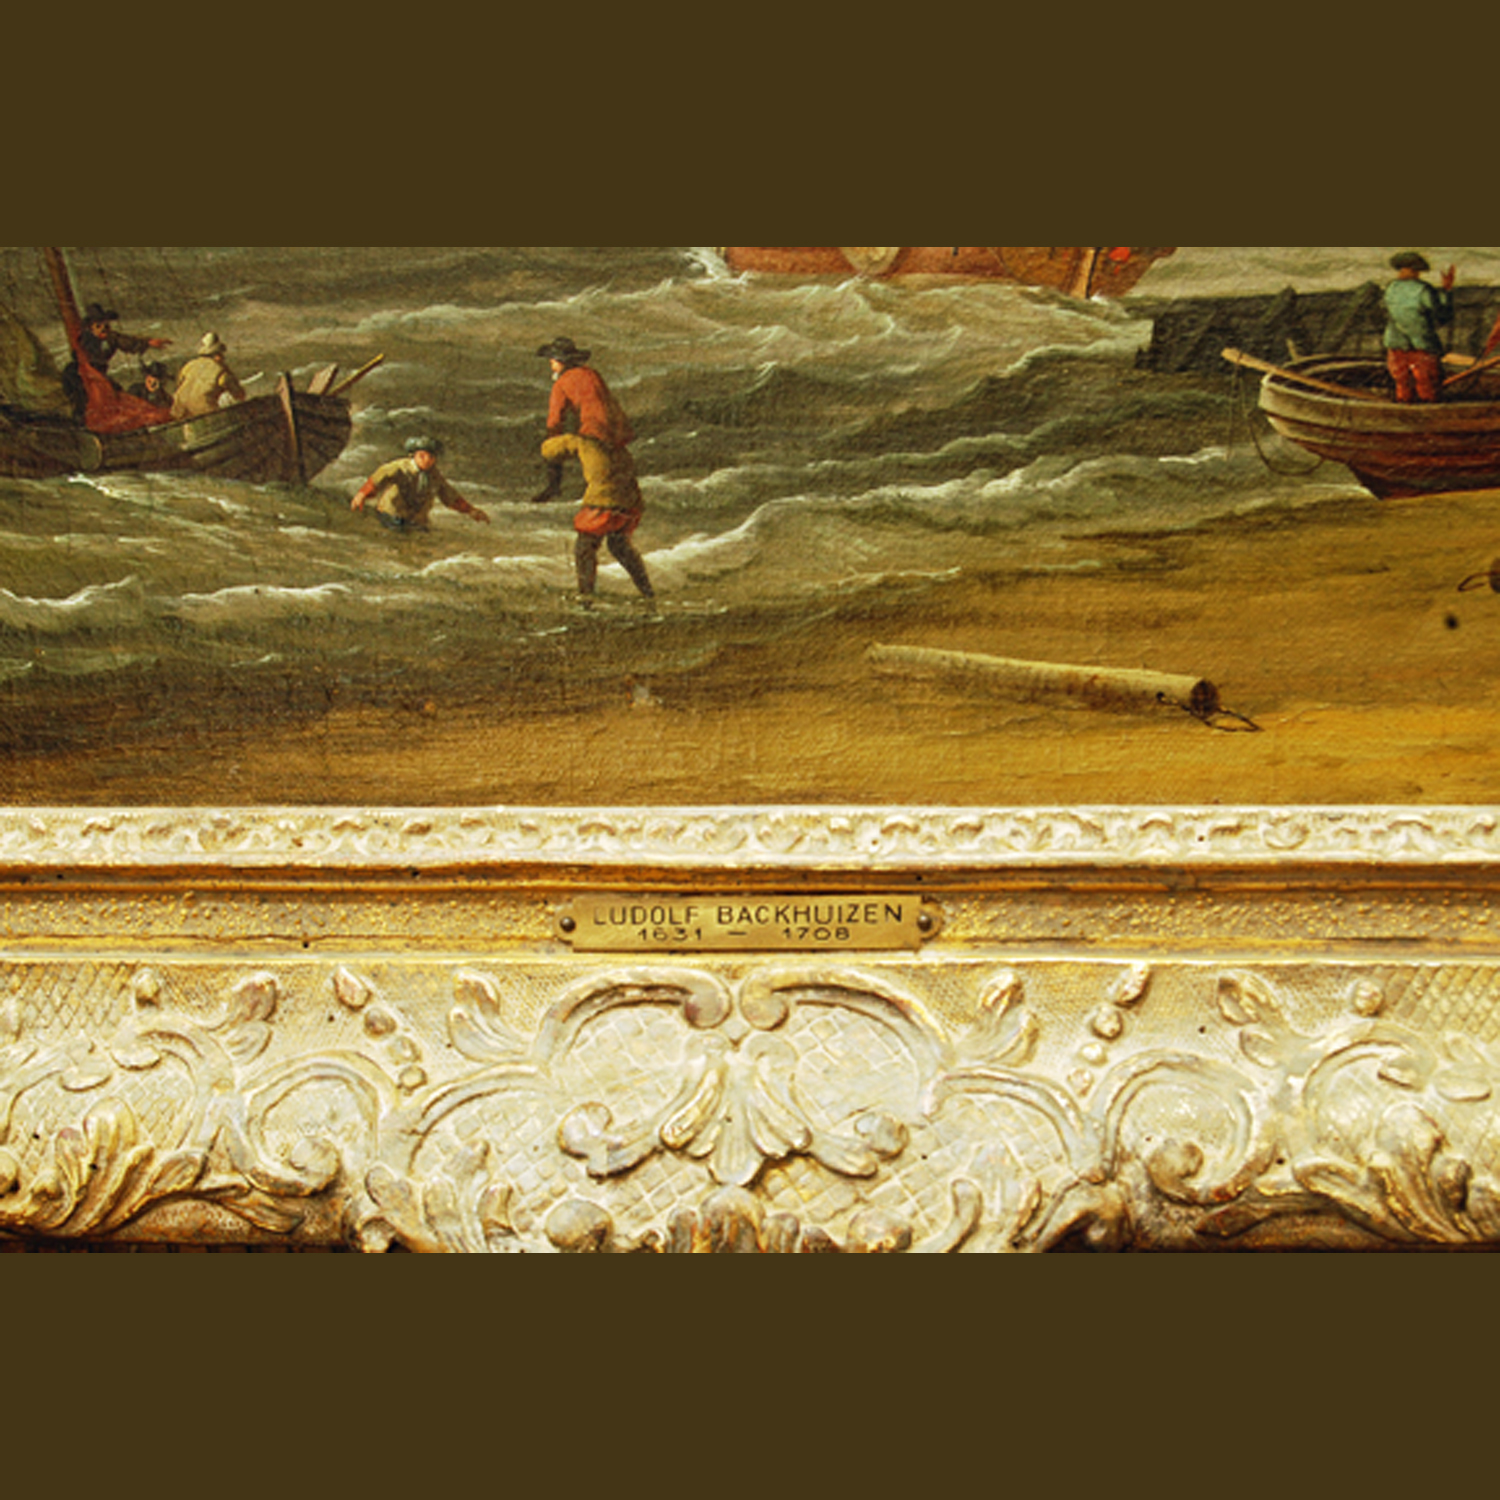 Dutch Seascape, Backhuysen, Ludolf, Dutch, 1631 - 1708